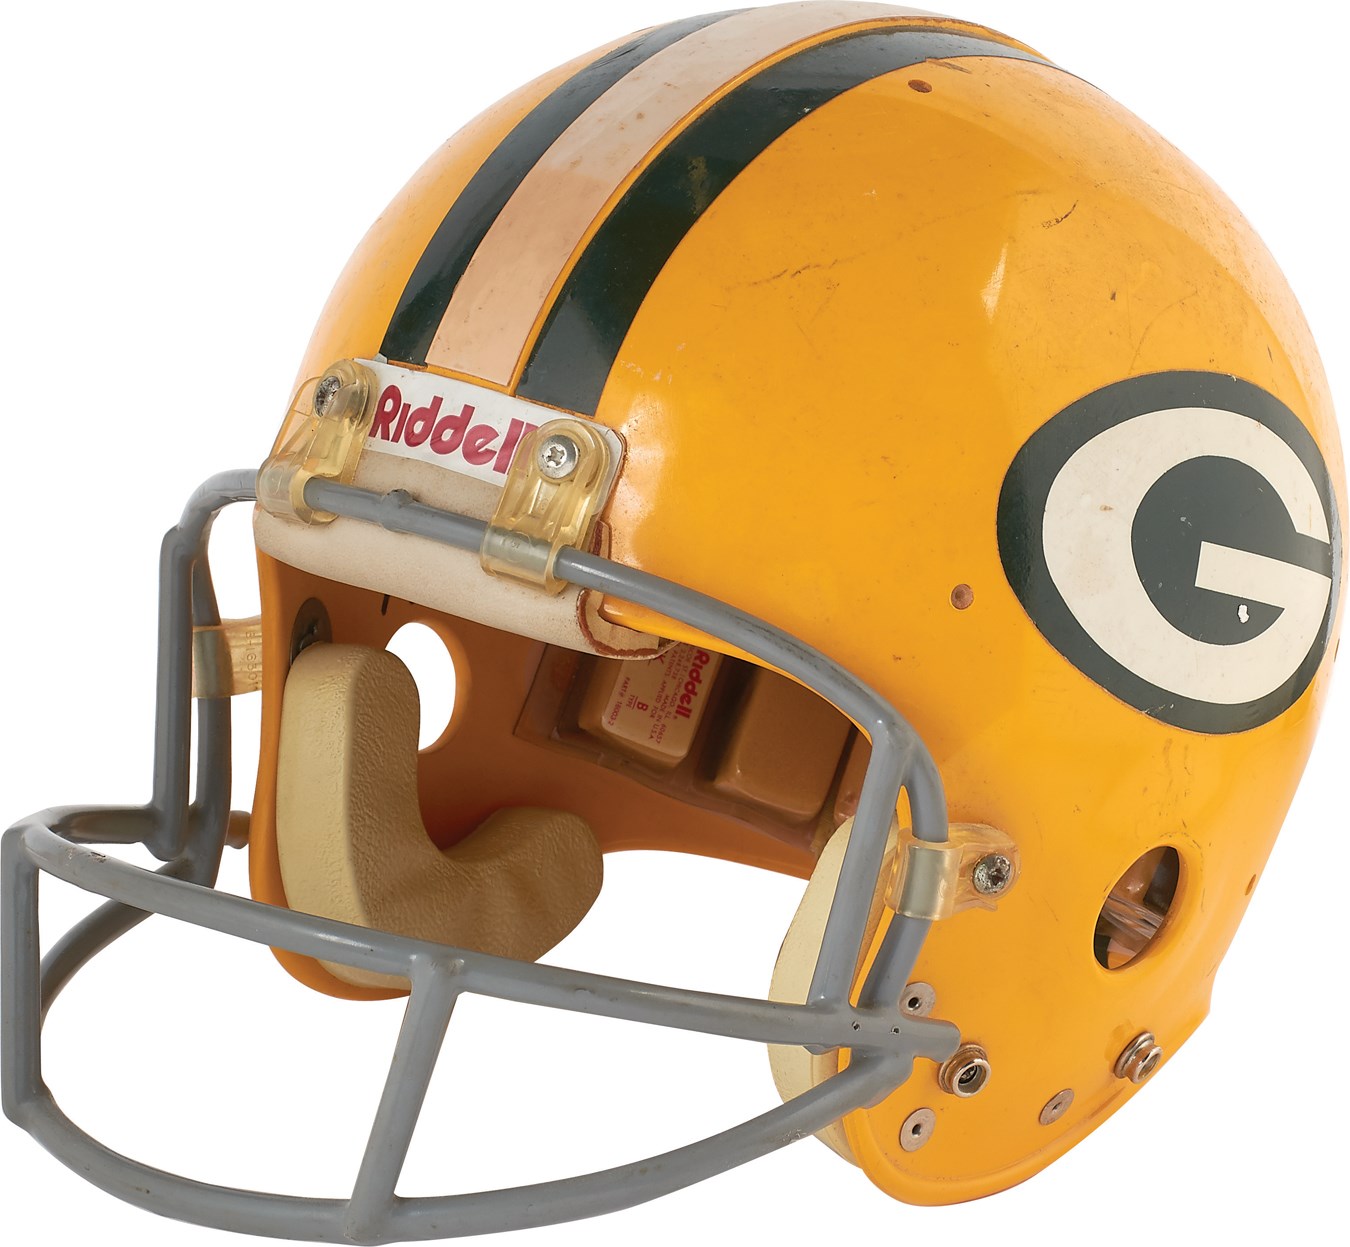 Football - 1980s Green Bay Packers Game Worn Helmet